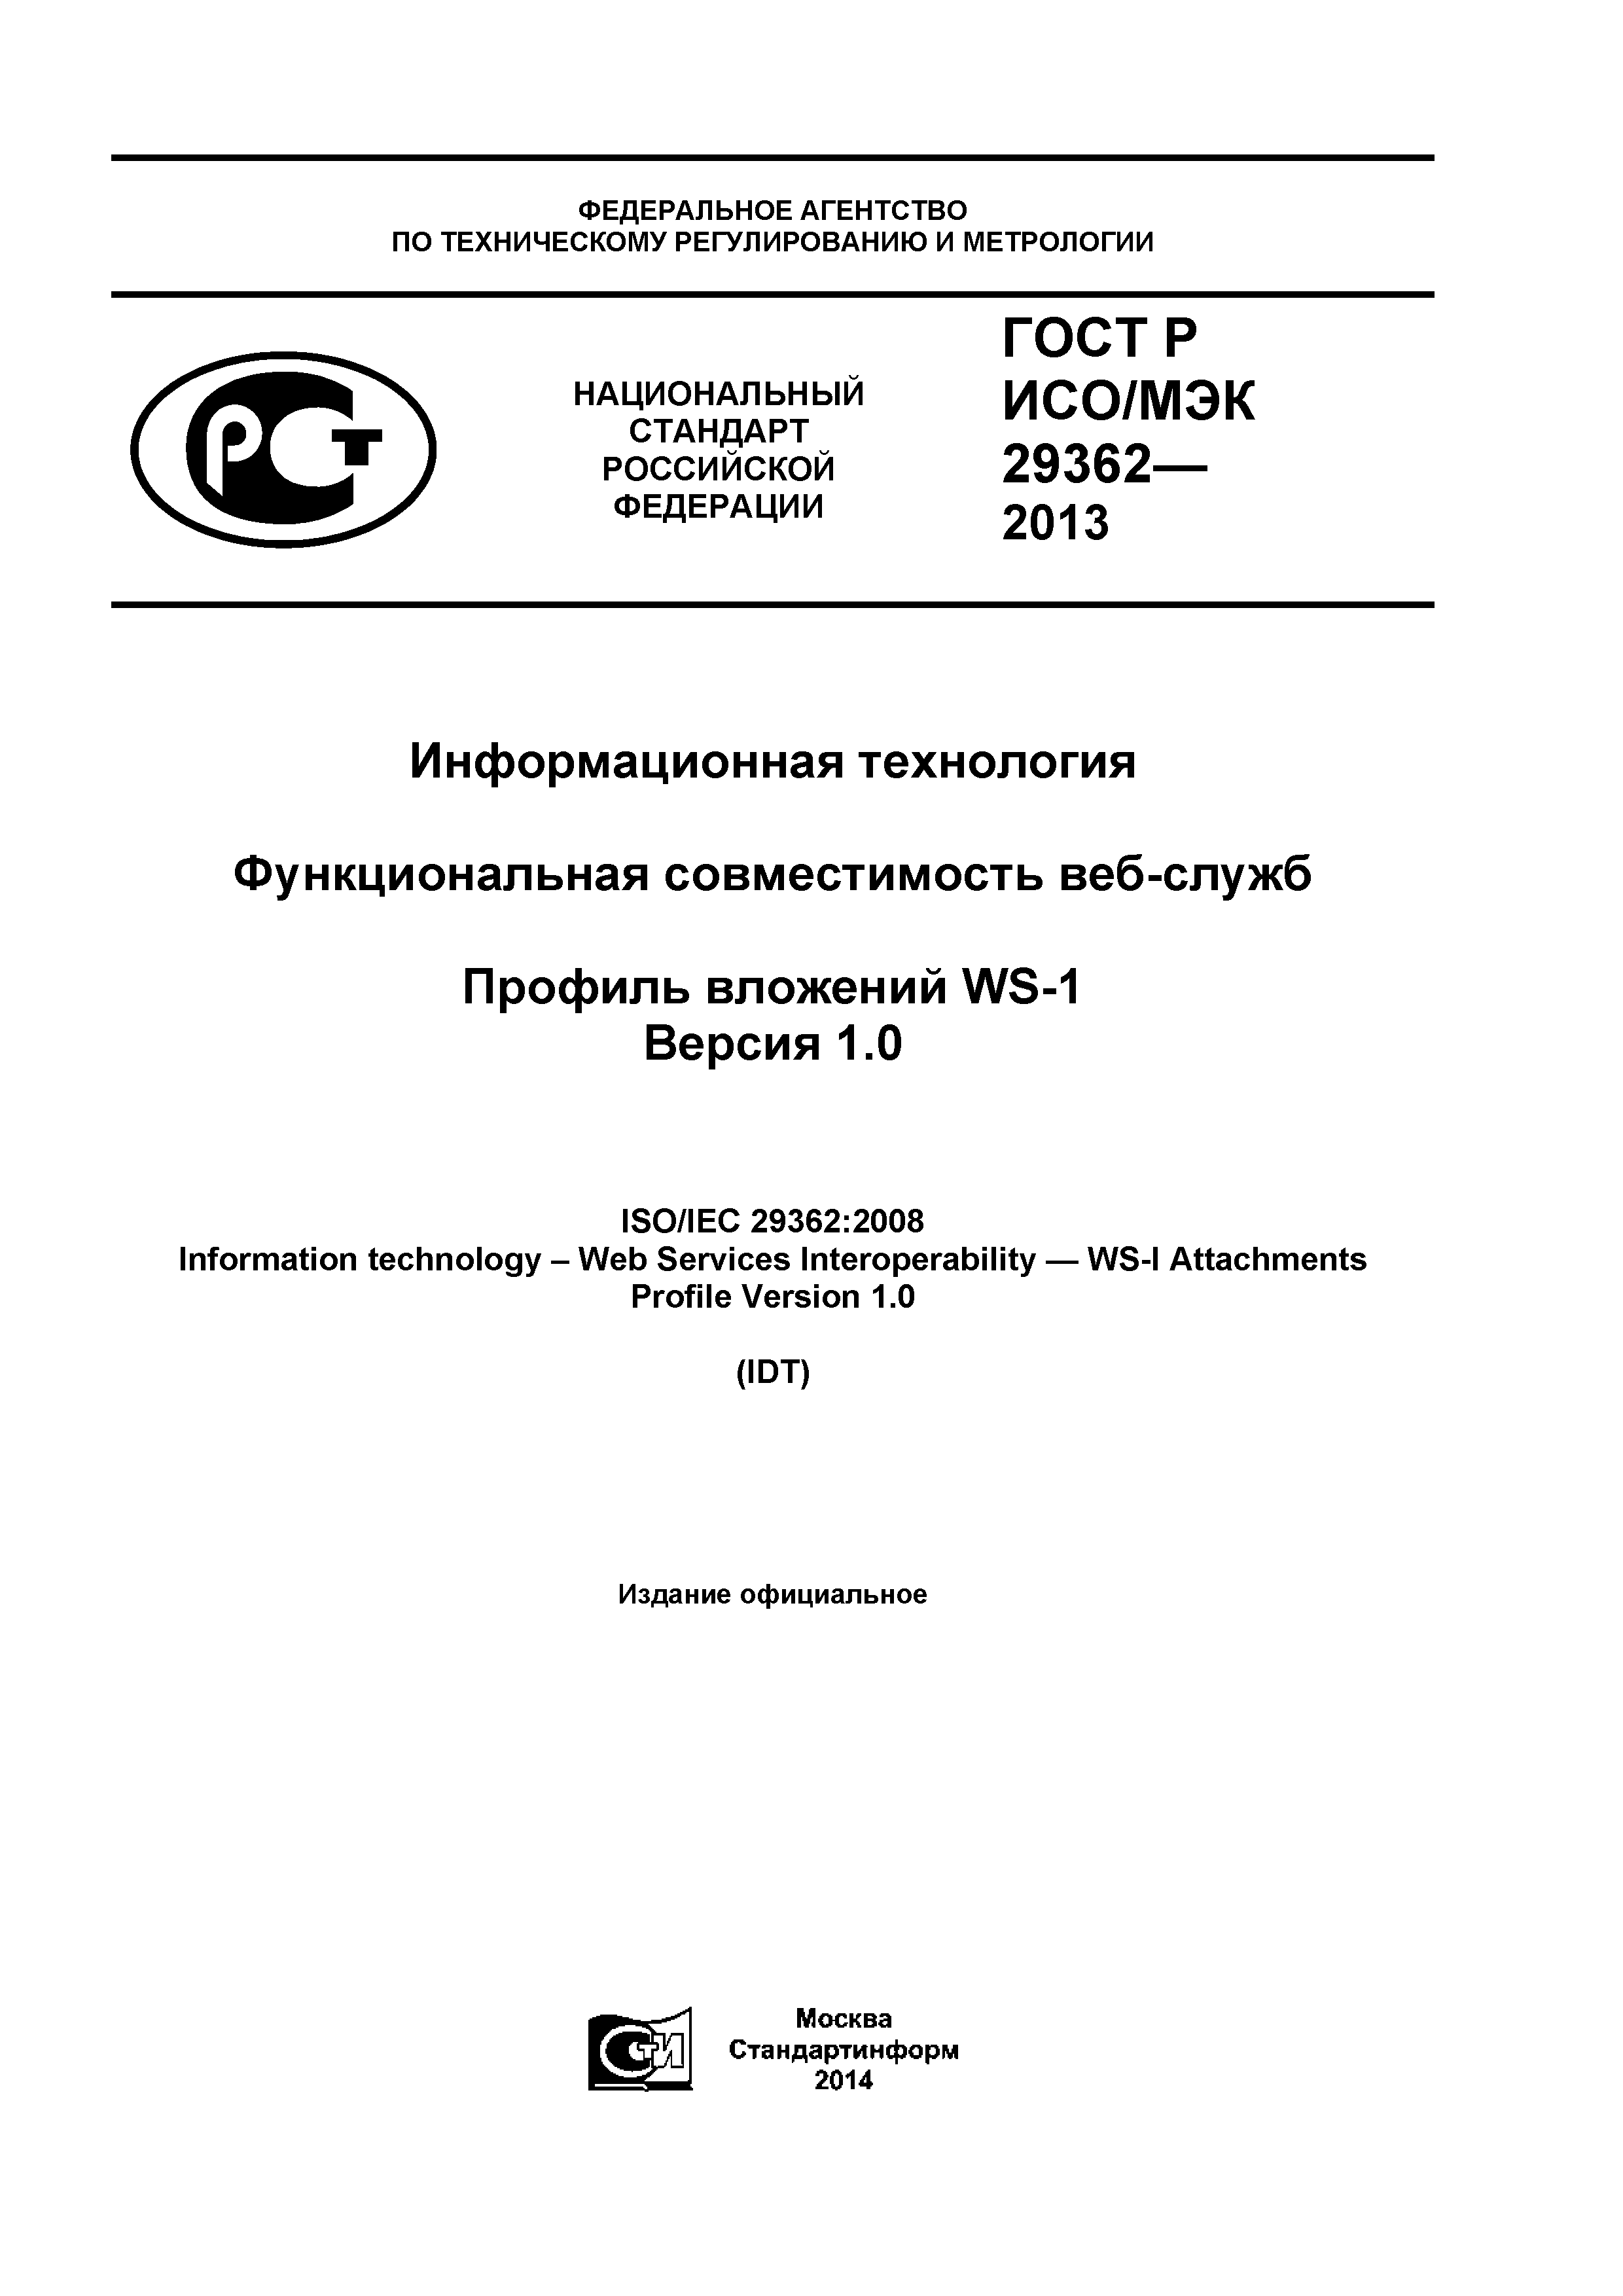 ГОСТ Р ИСО/МЭК 29362-2013